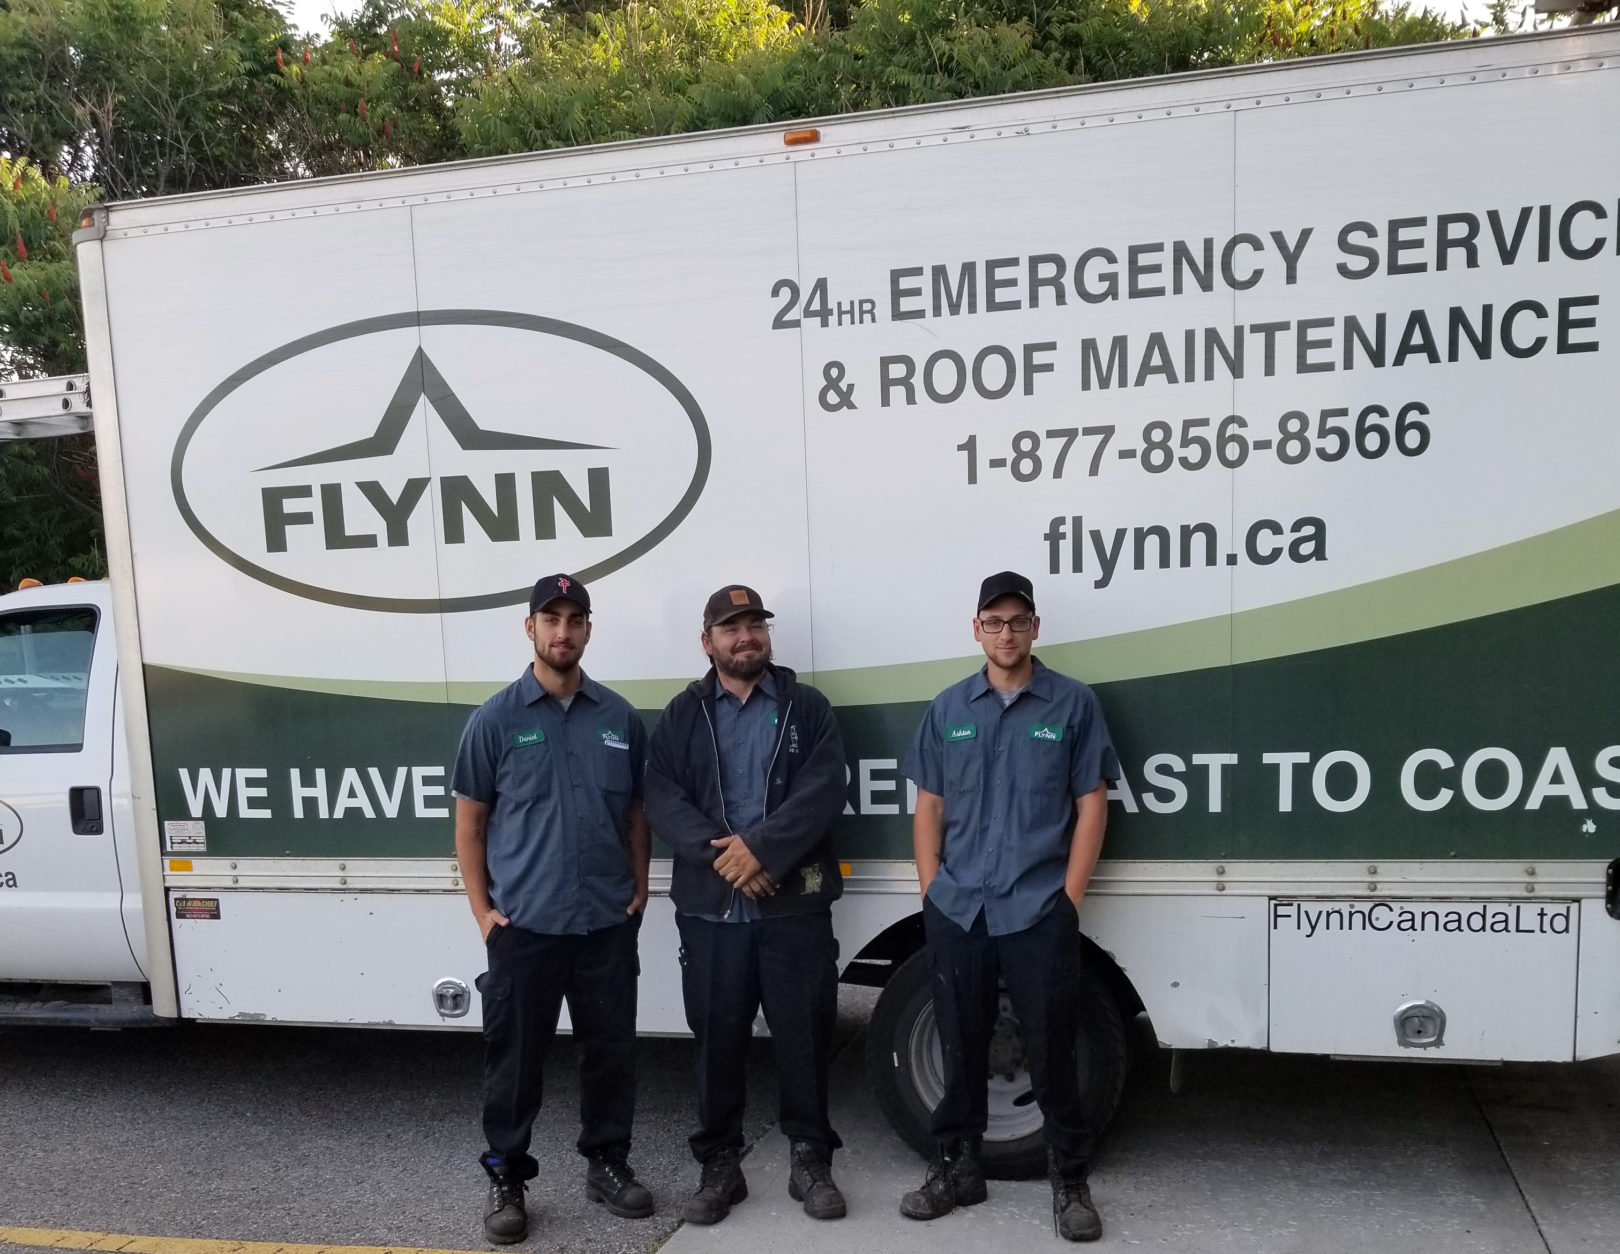 Dubbin Road Flynn crew in front of a Service truck